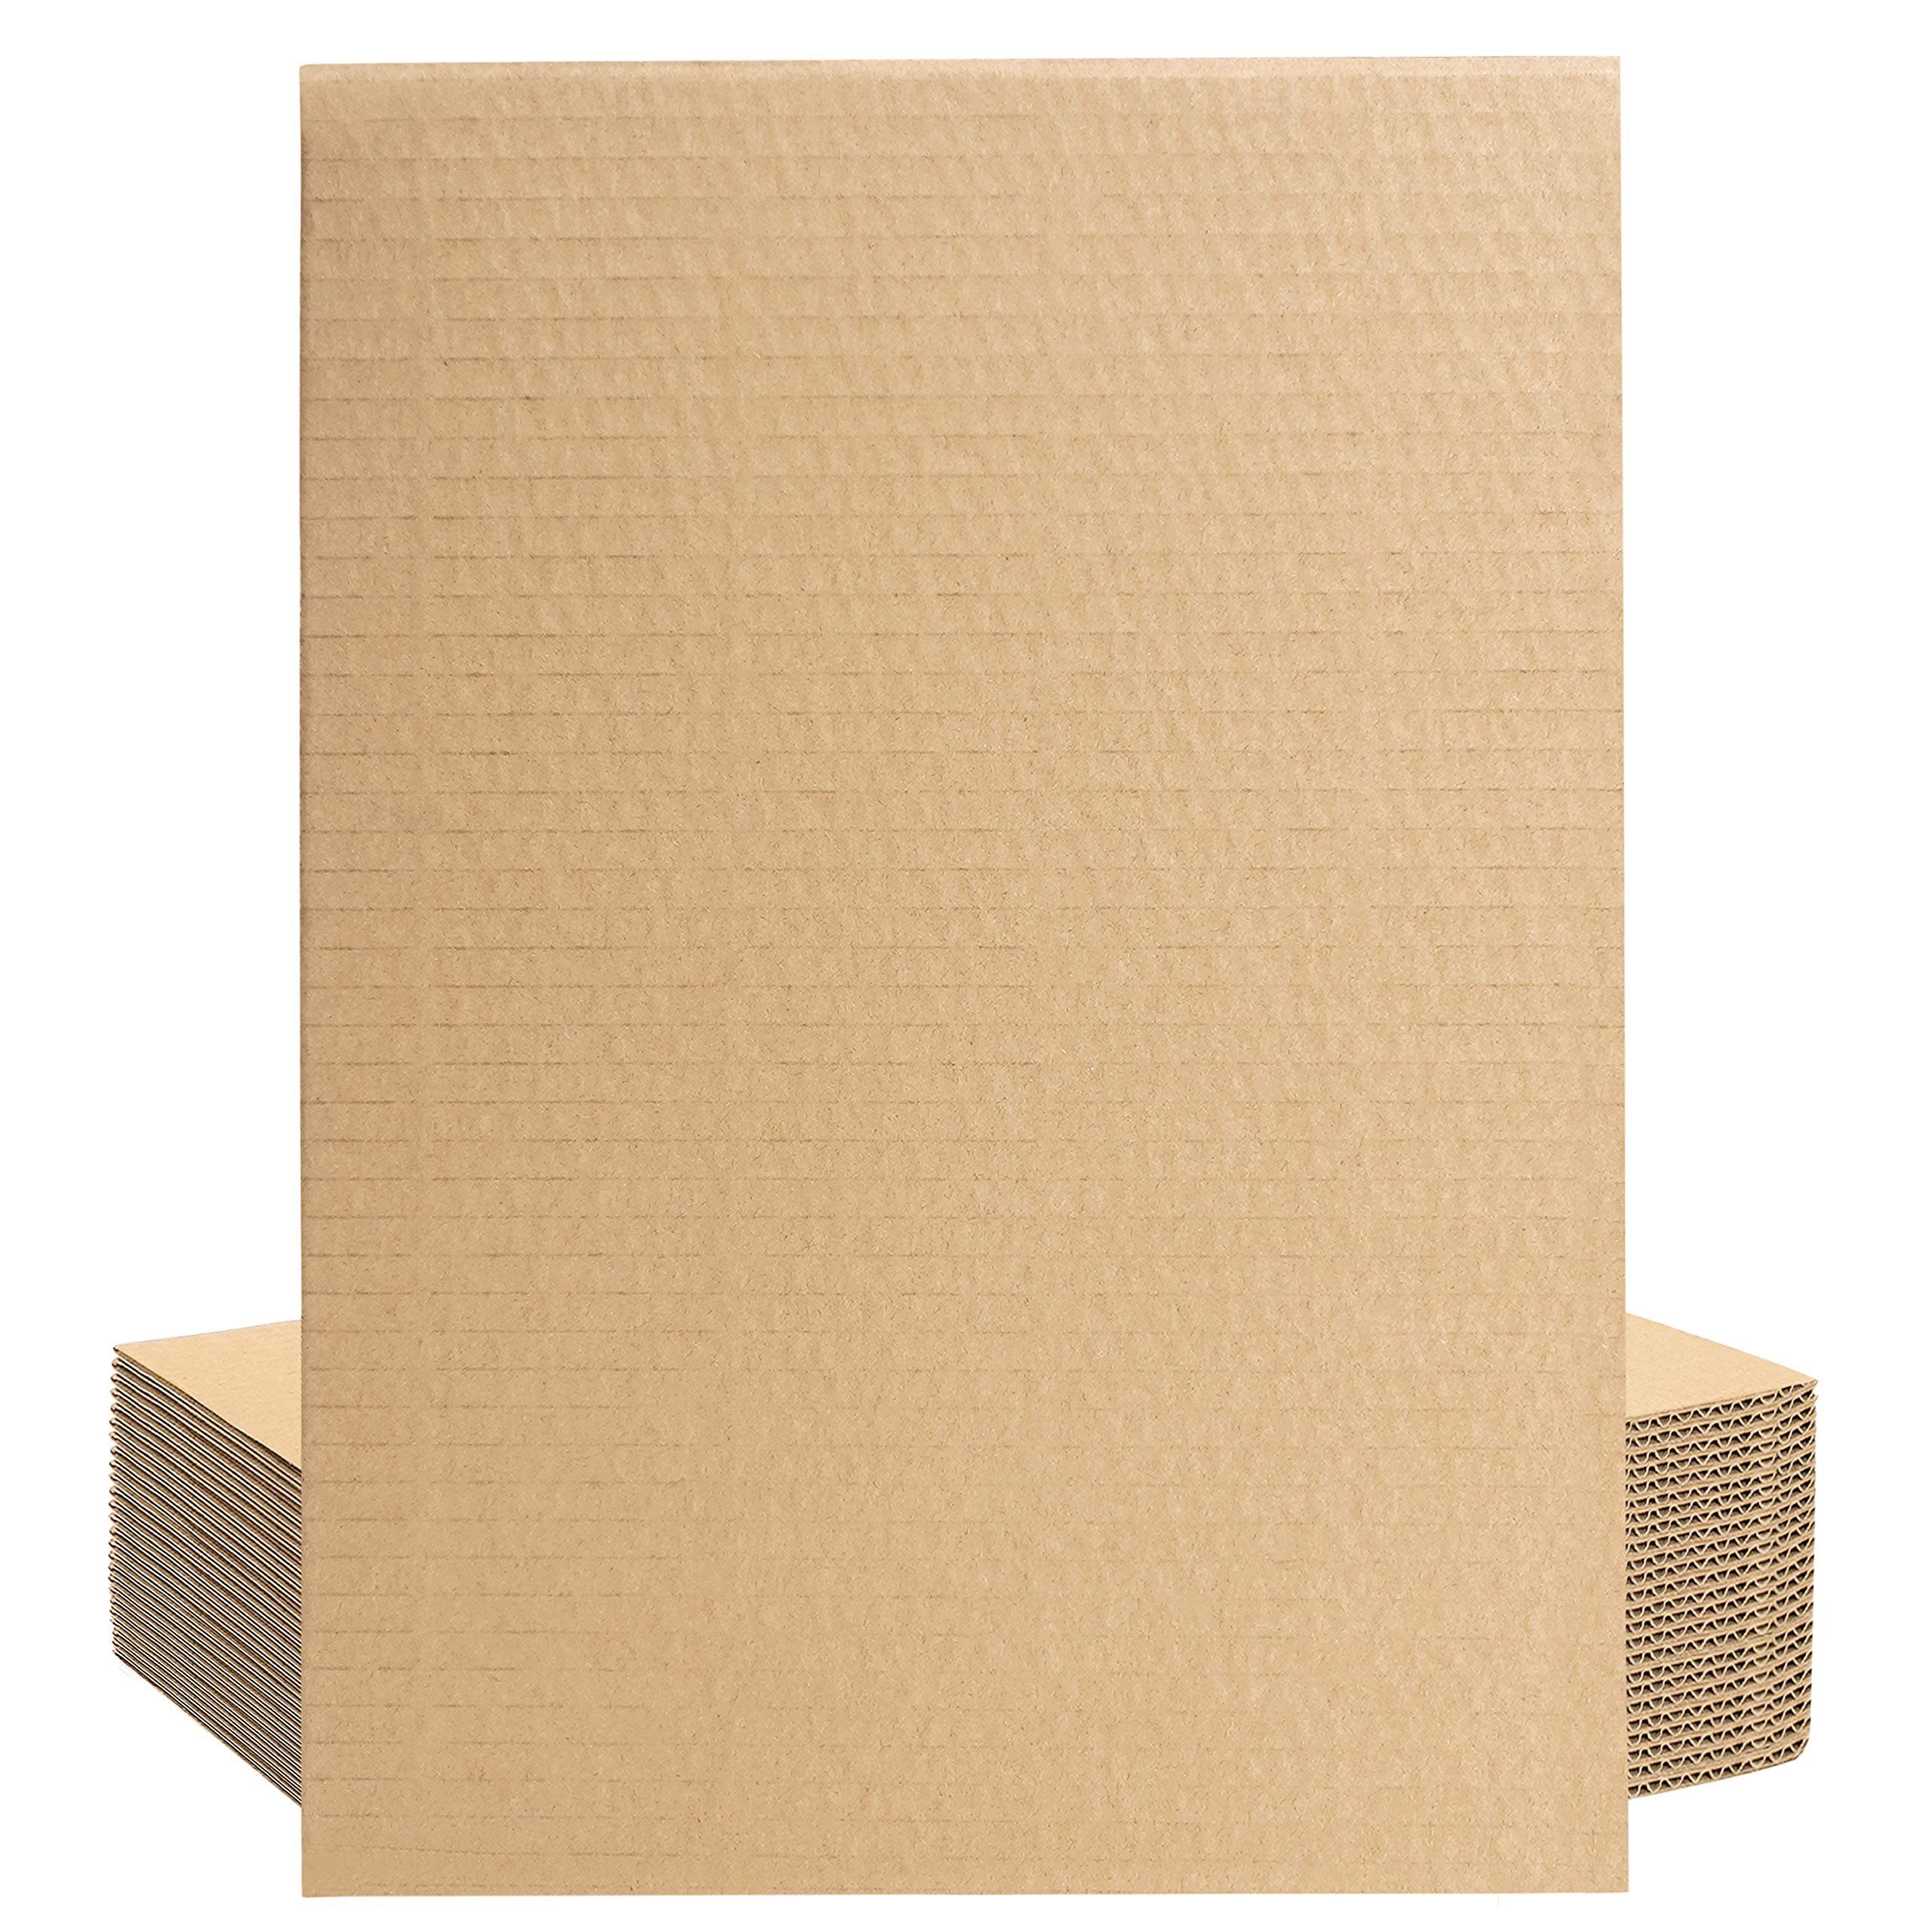 Belle Vous Kraftpapier dickes, flaches, Pack (24er Aquarellpapier Papier, braunes A4 24er 3 mm Pack) A4 3mm - flaches dickes Kraftpapier Brauner Karton 